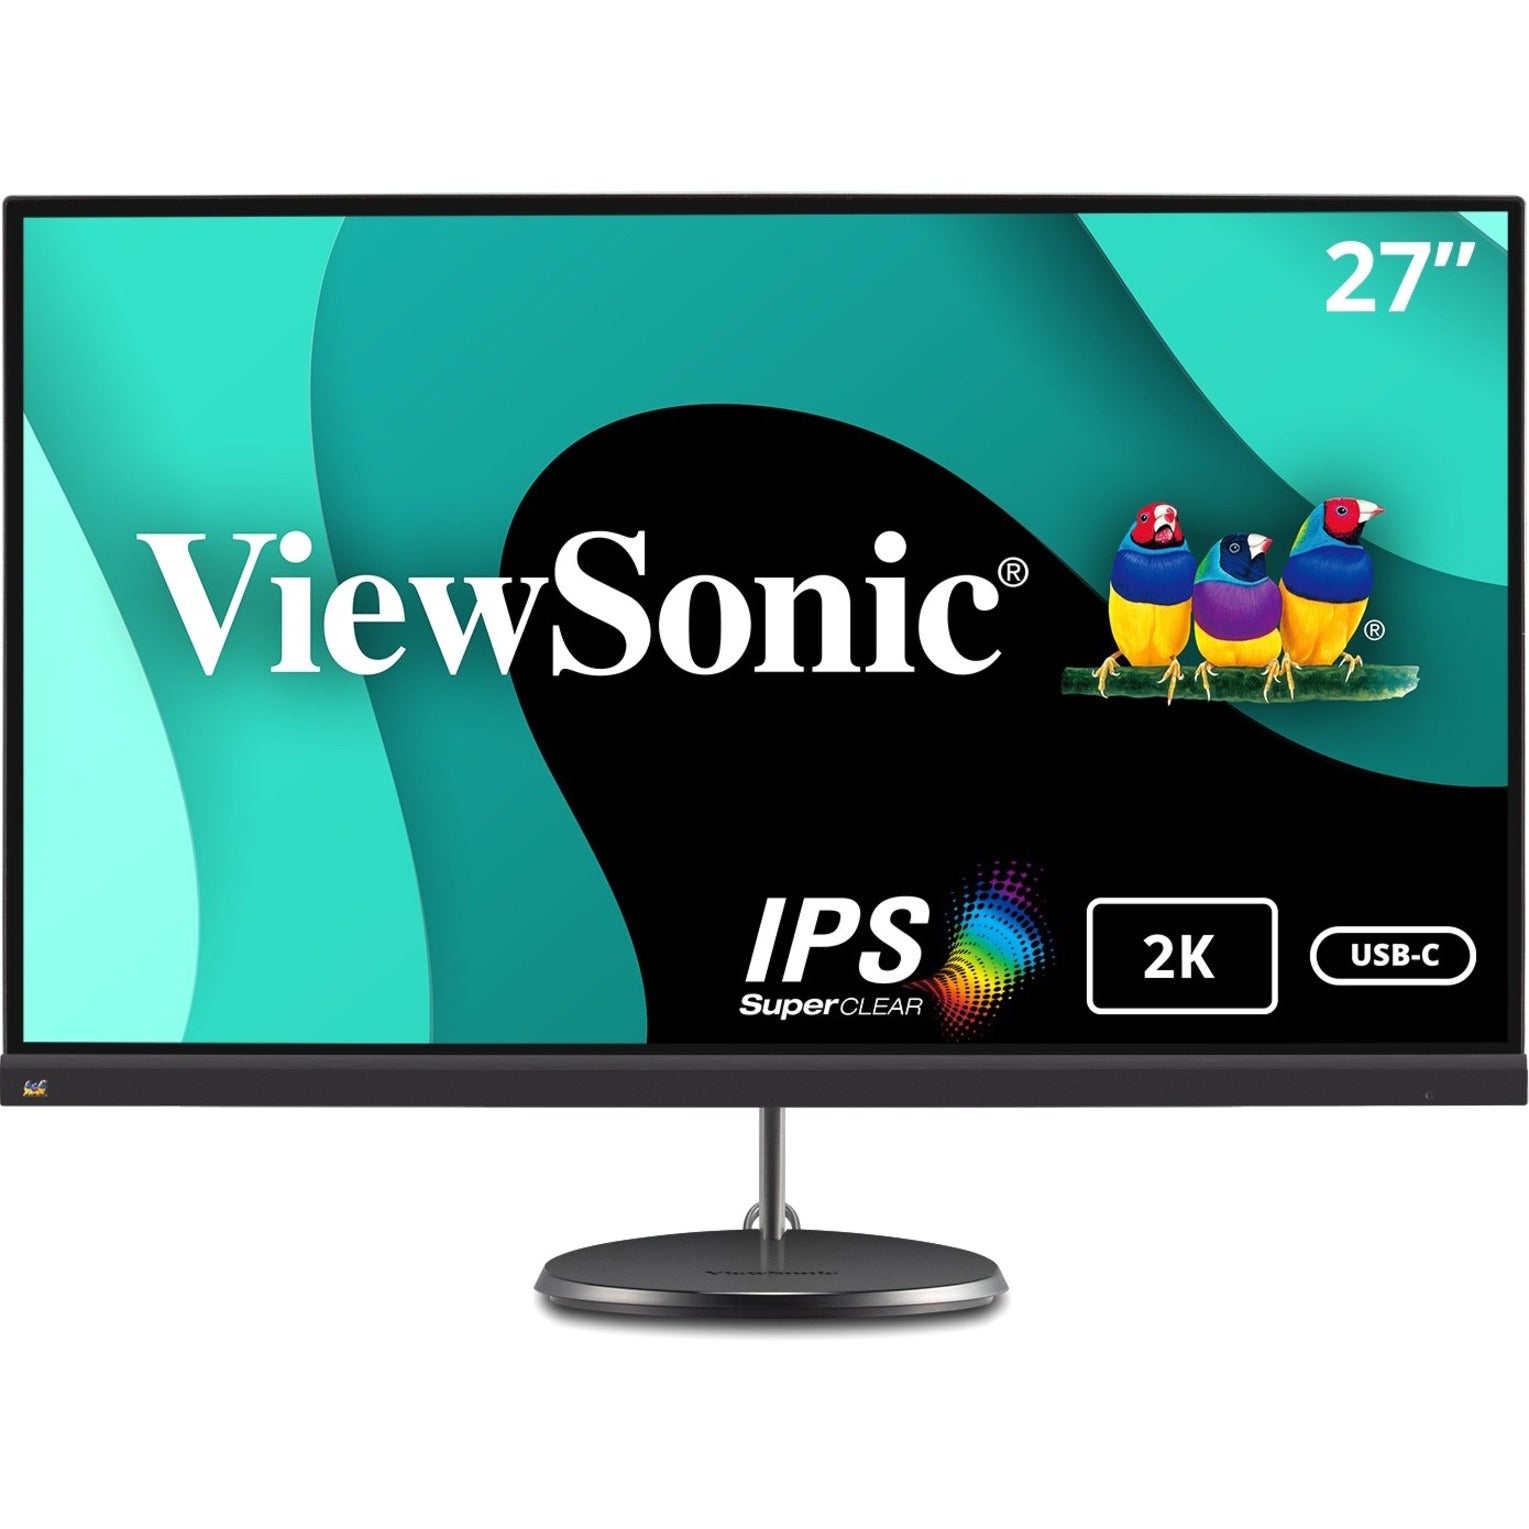 ViewSonic VX2785-2K-MHDU 27 Slim Profile USB-C Quad HD Monitor, 2560 x 1440 Resolution, FreeSync